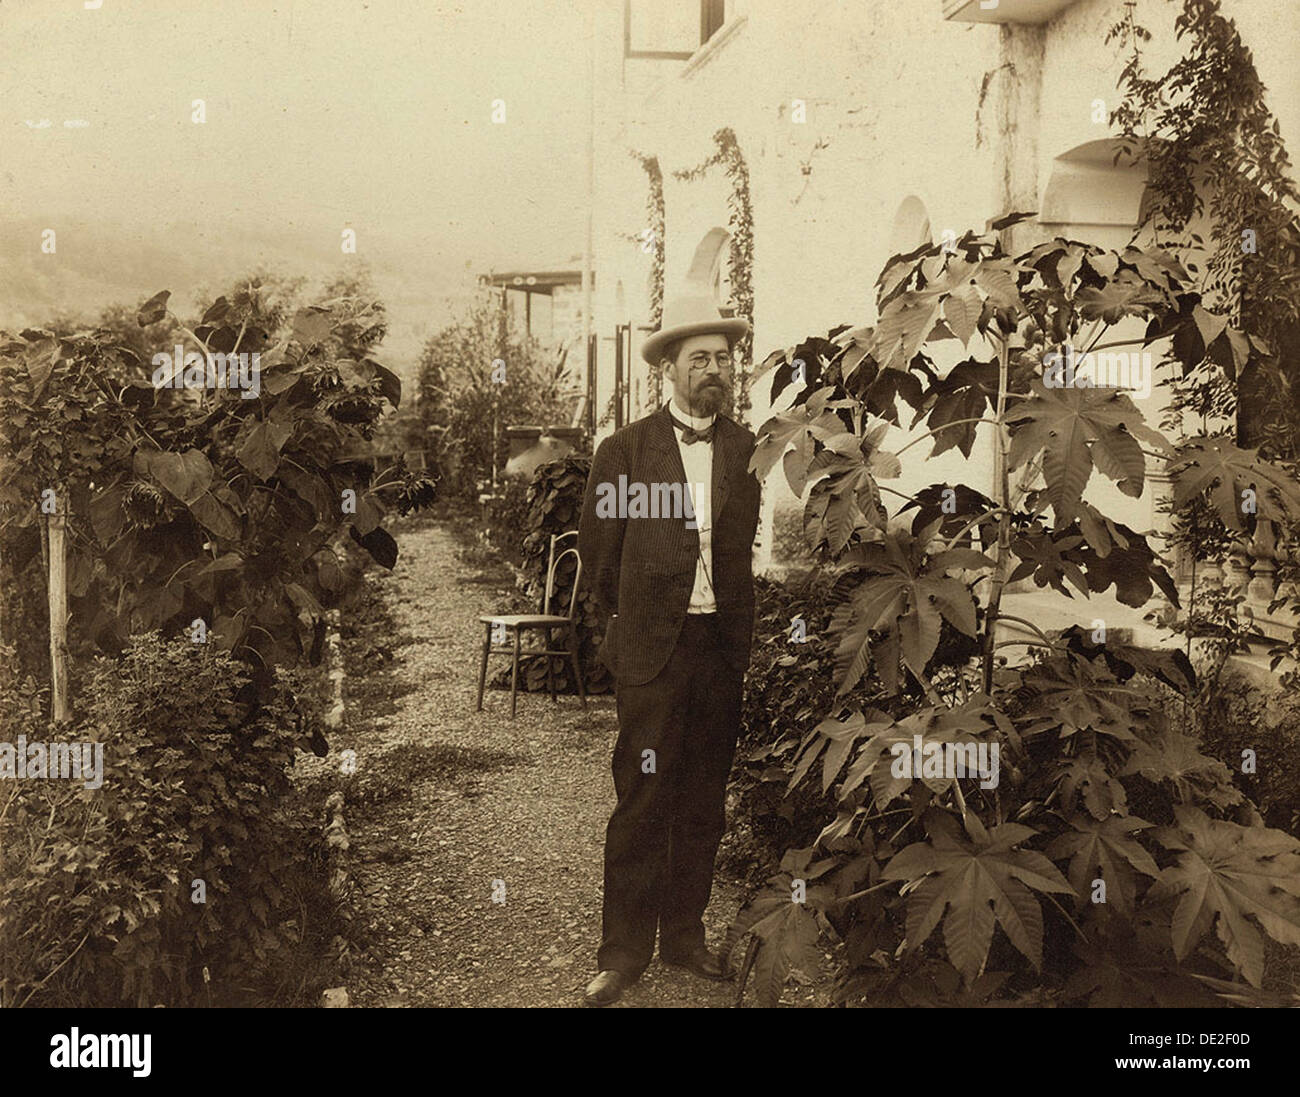 Anton Chekhov, autore russo, Yalta, Crimea, Russia, c1900. Artista: sconosciuto Foto Stock